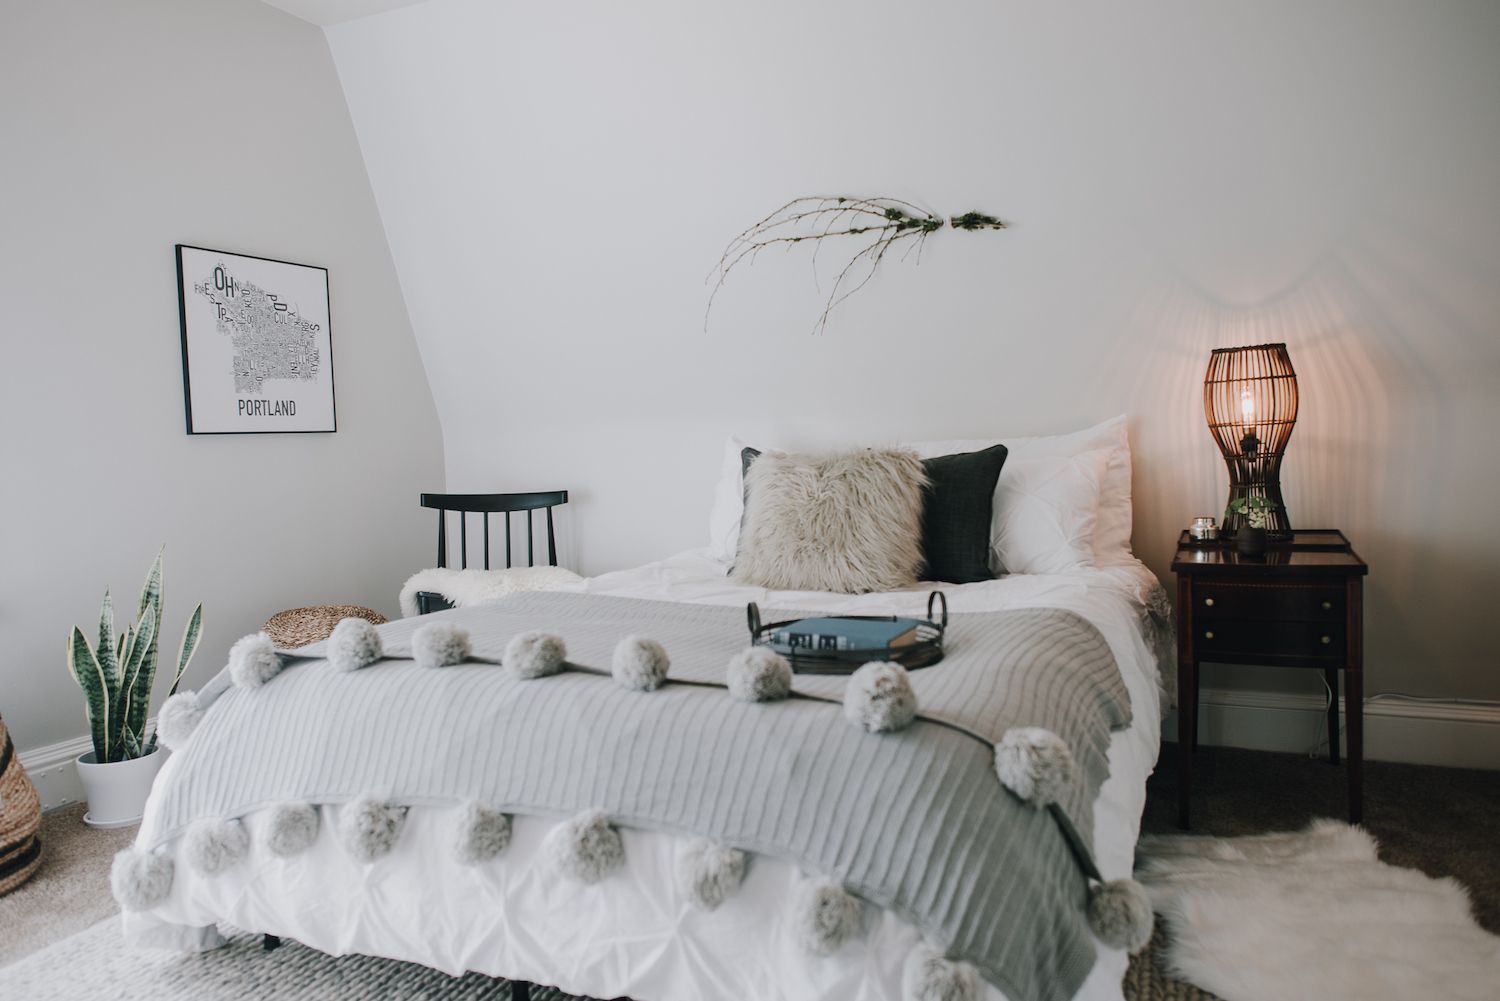 dormitorio moderno con texturas suaves: almohada peluda, manta gris con pompones en el extremo. Tonos fríos